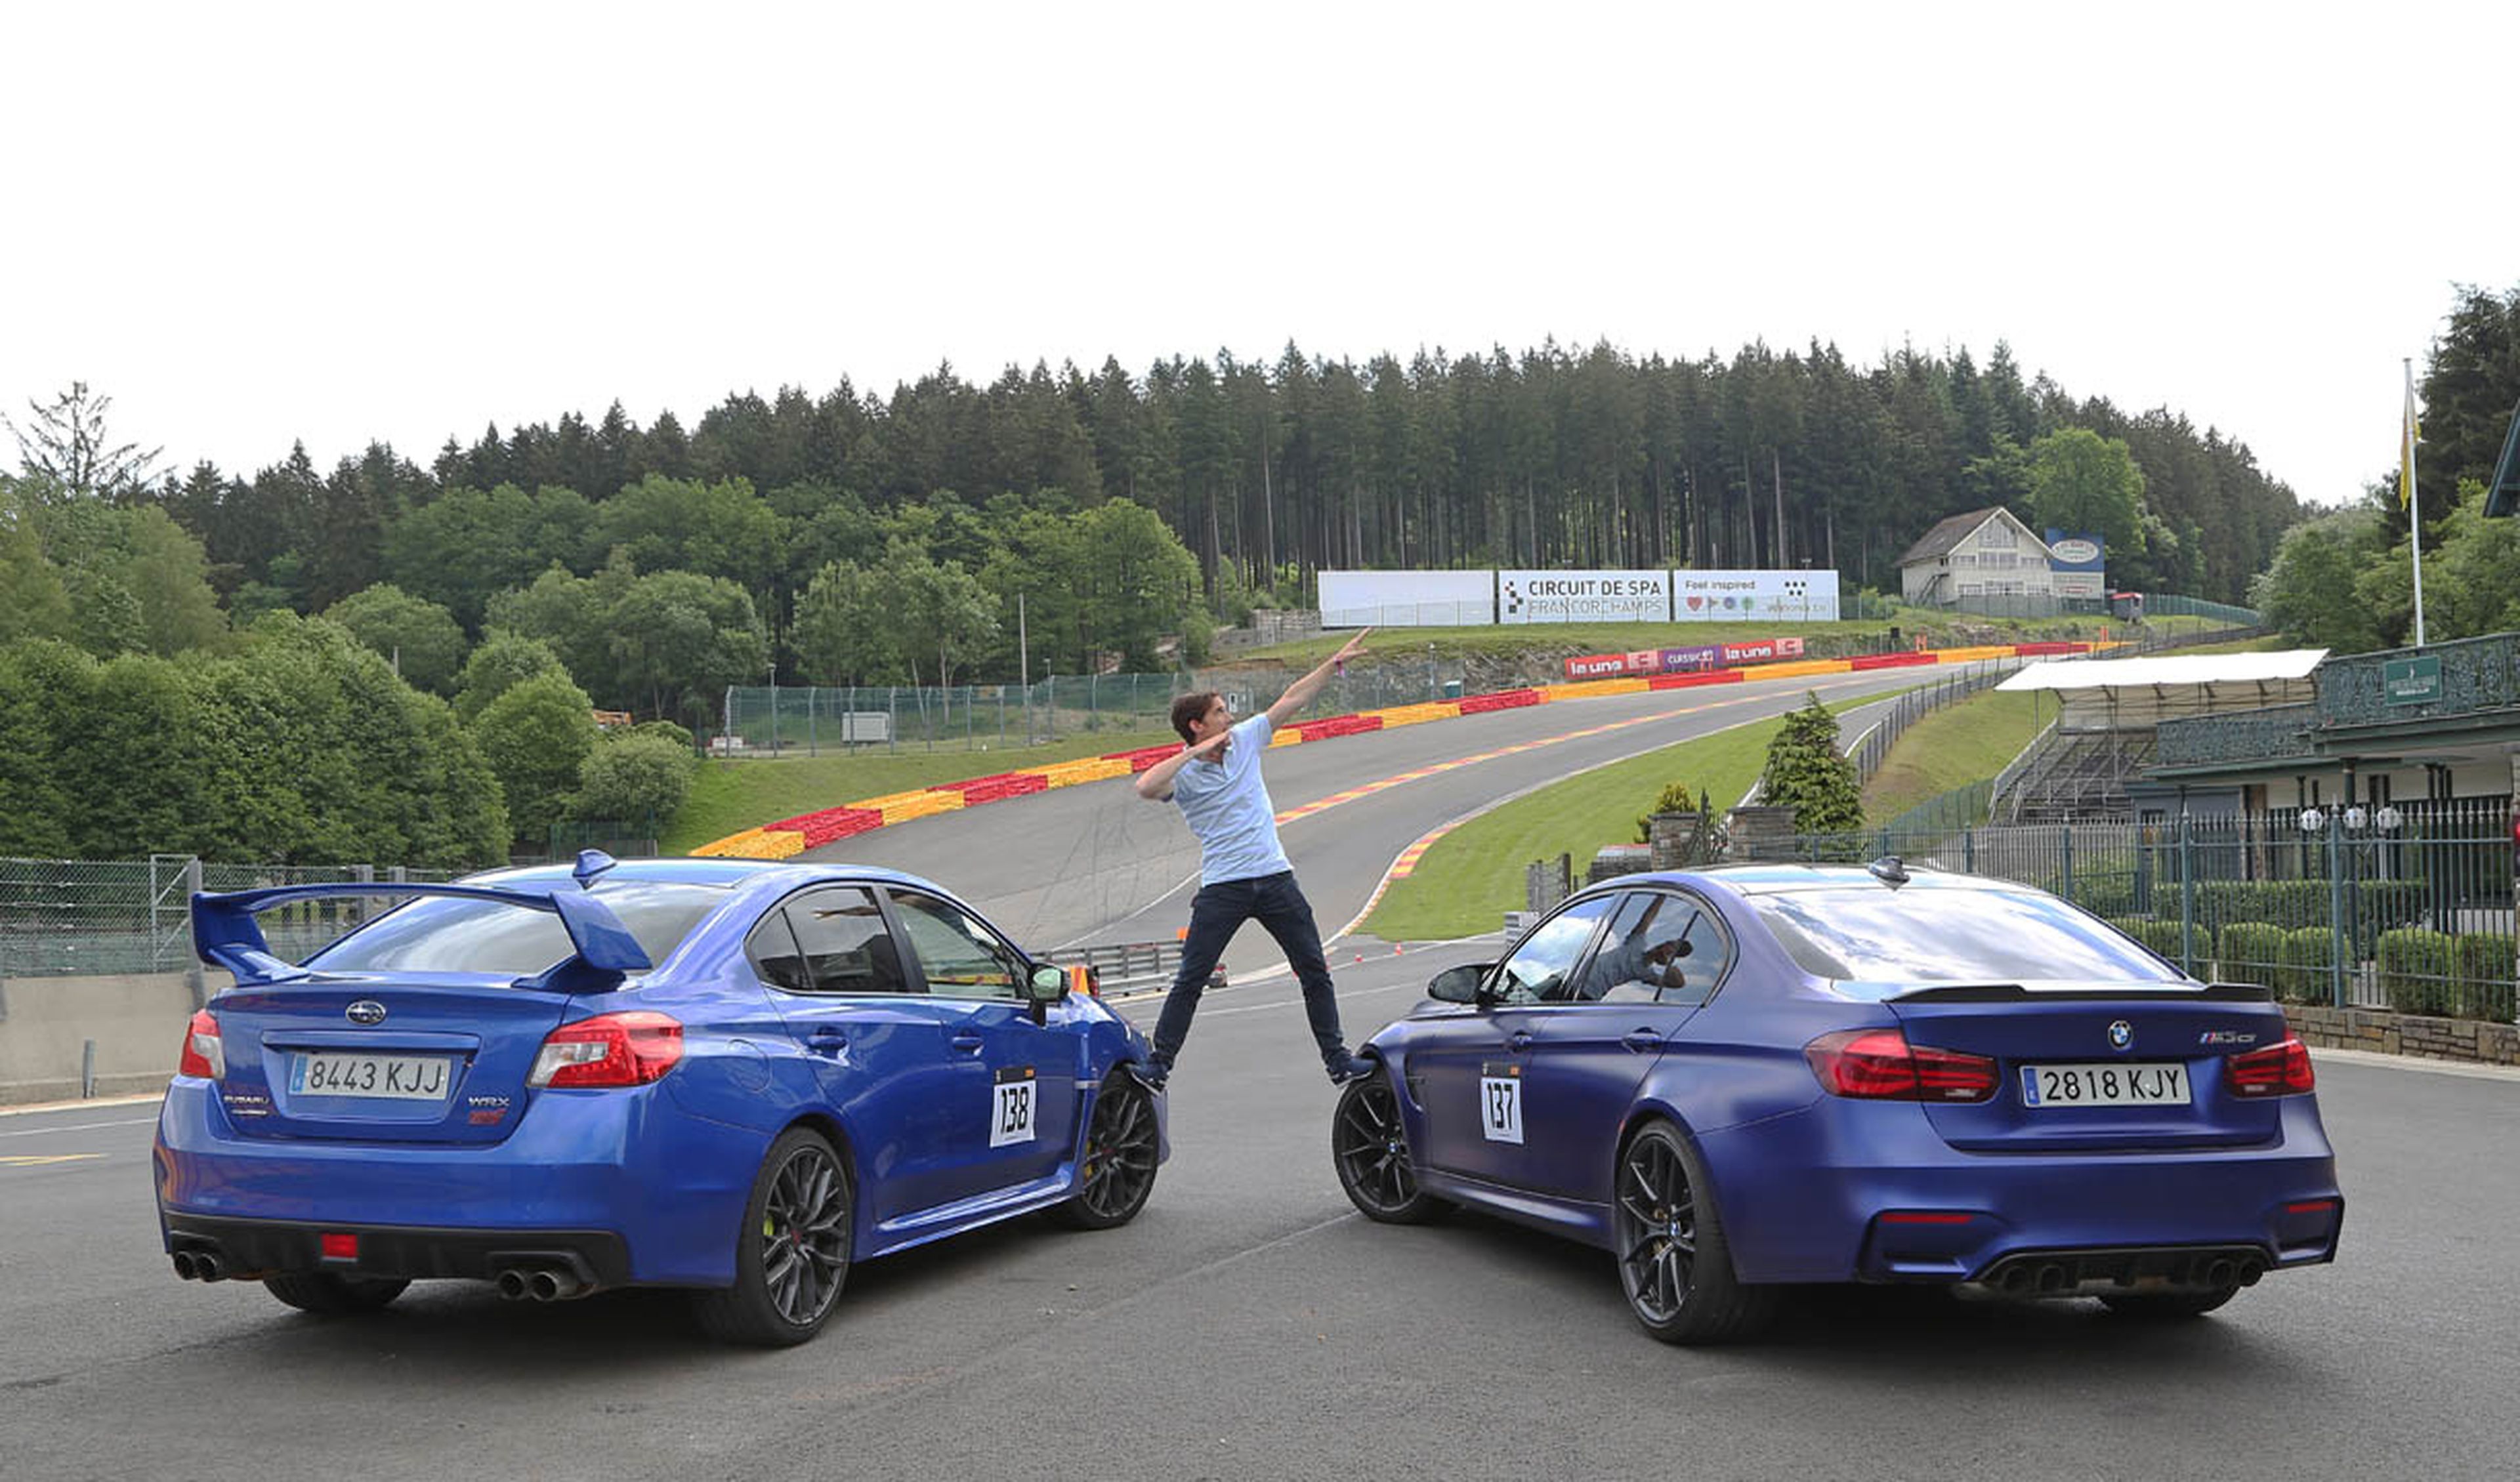 Viaje a Spa Francorchamps con BMW y Subaru